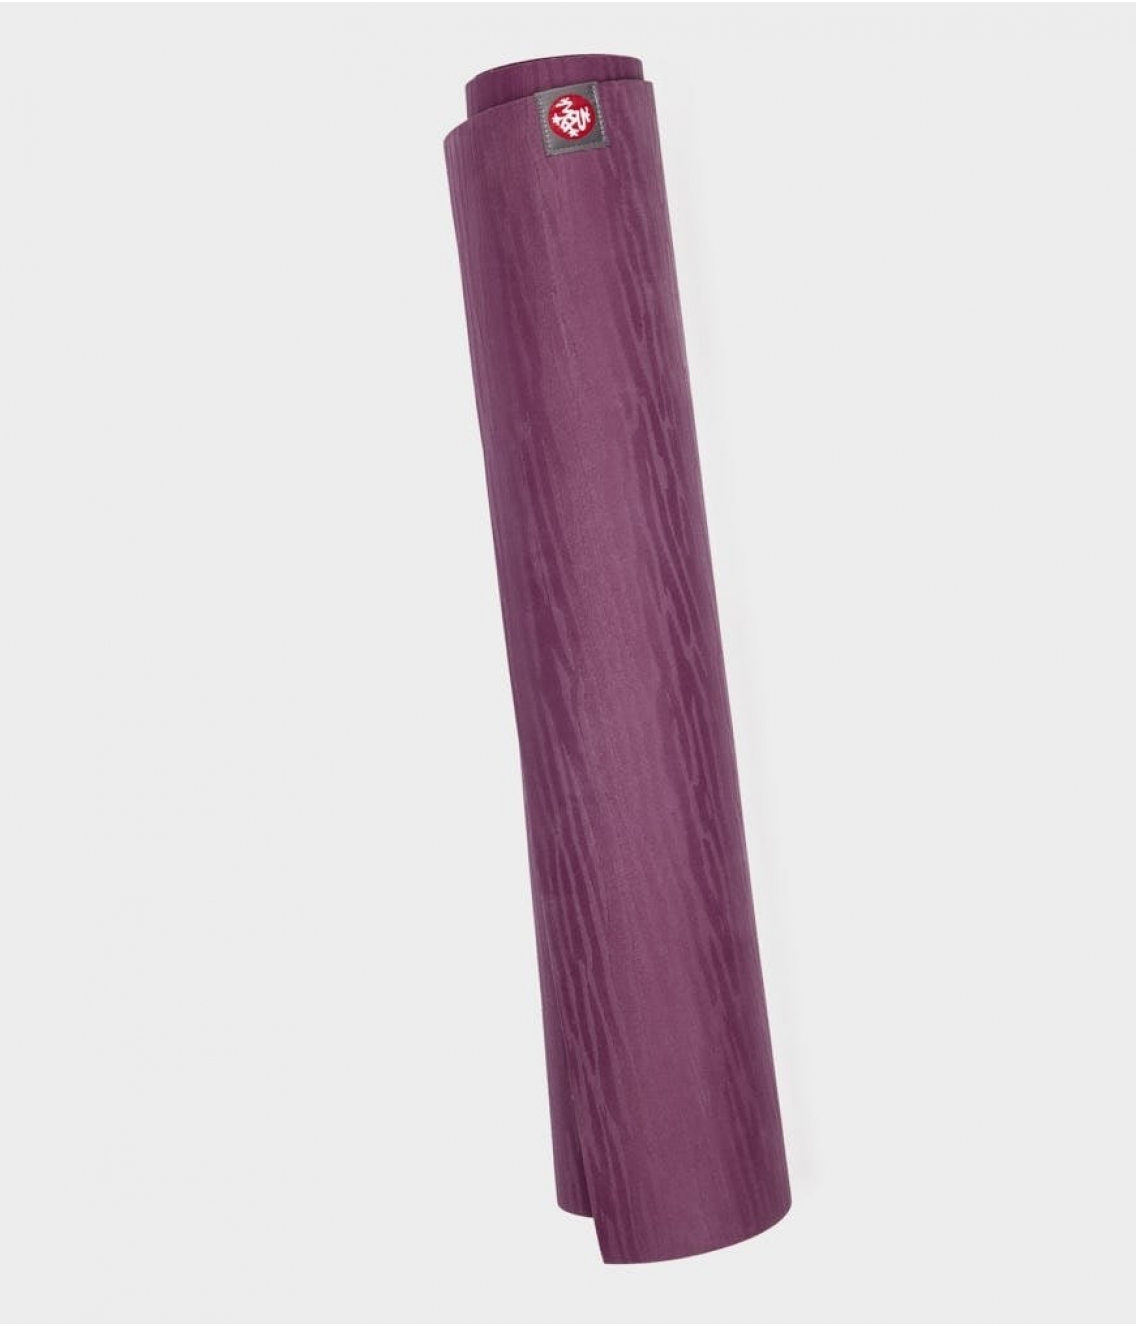 Профессиональный каучуковый коврик для йоги Manduka eKO 180*61*0,5 см - Acai Midnight